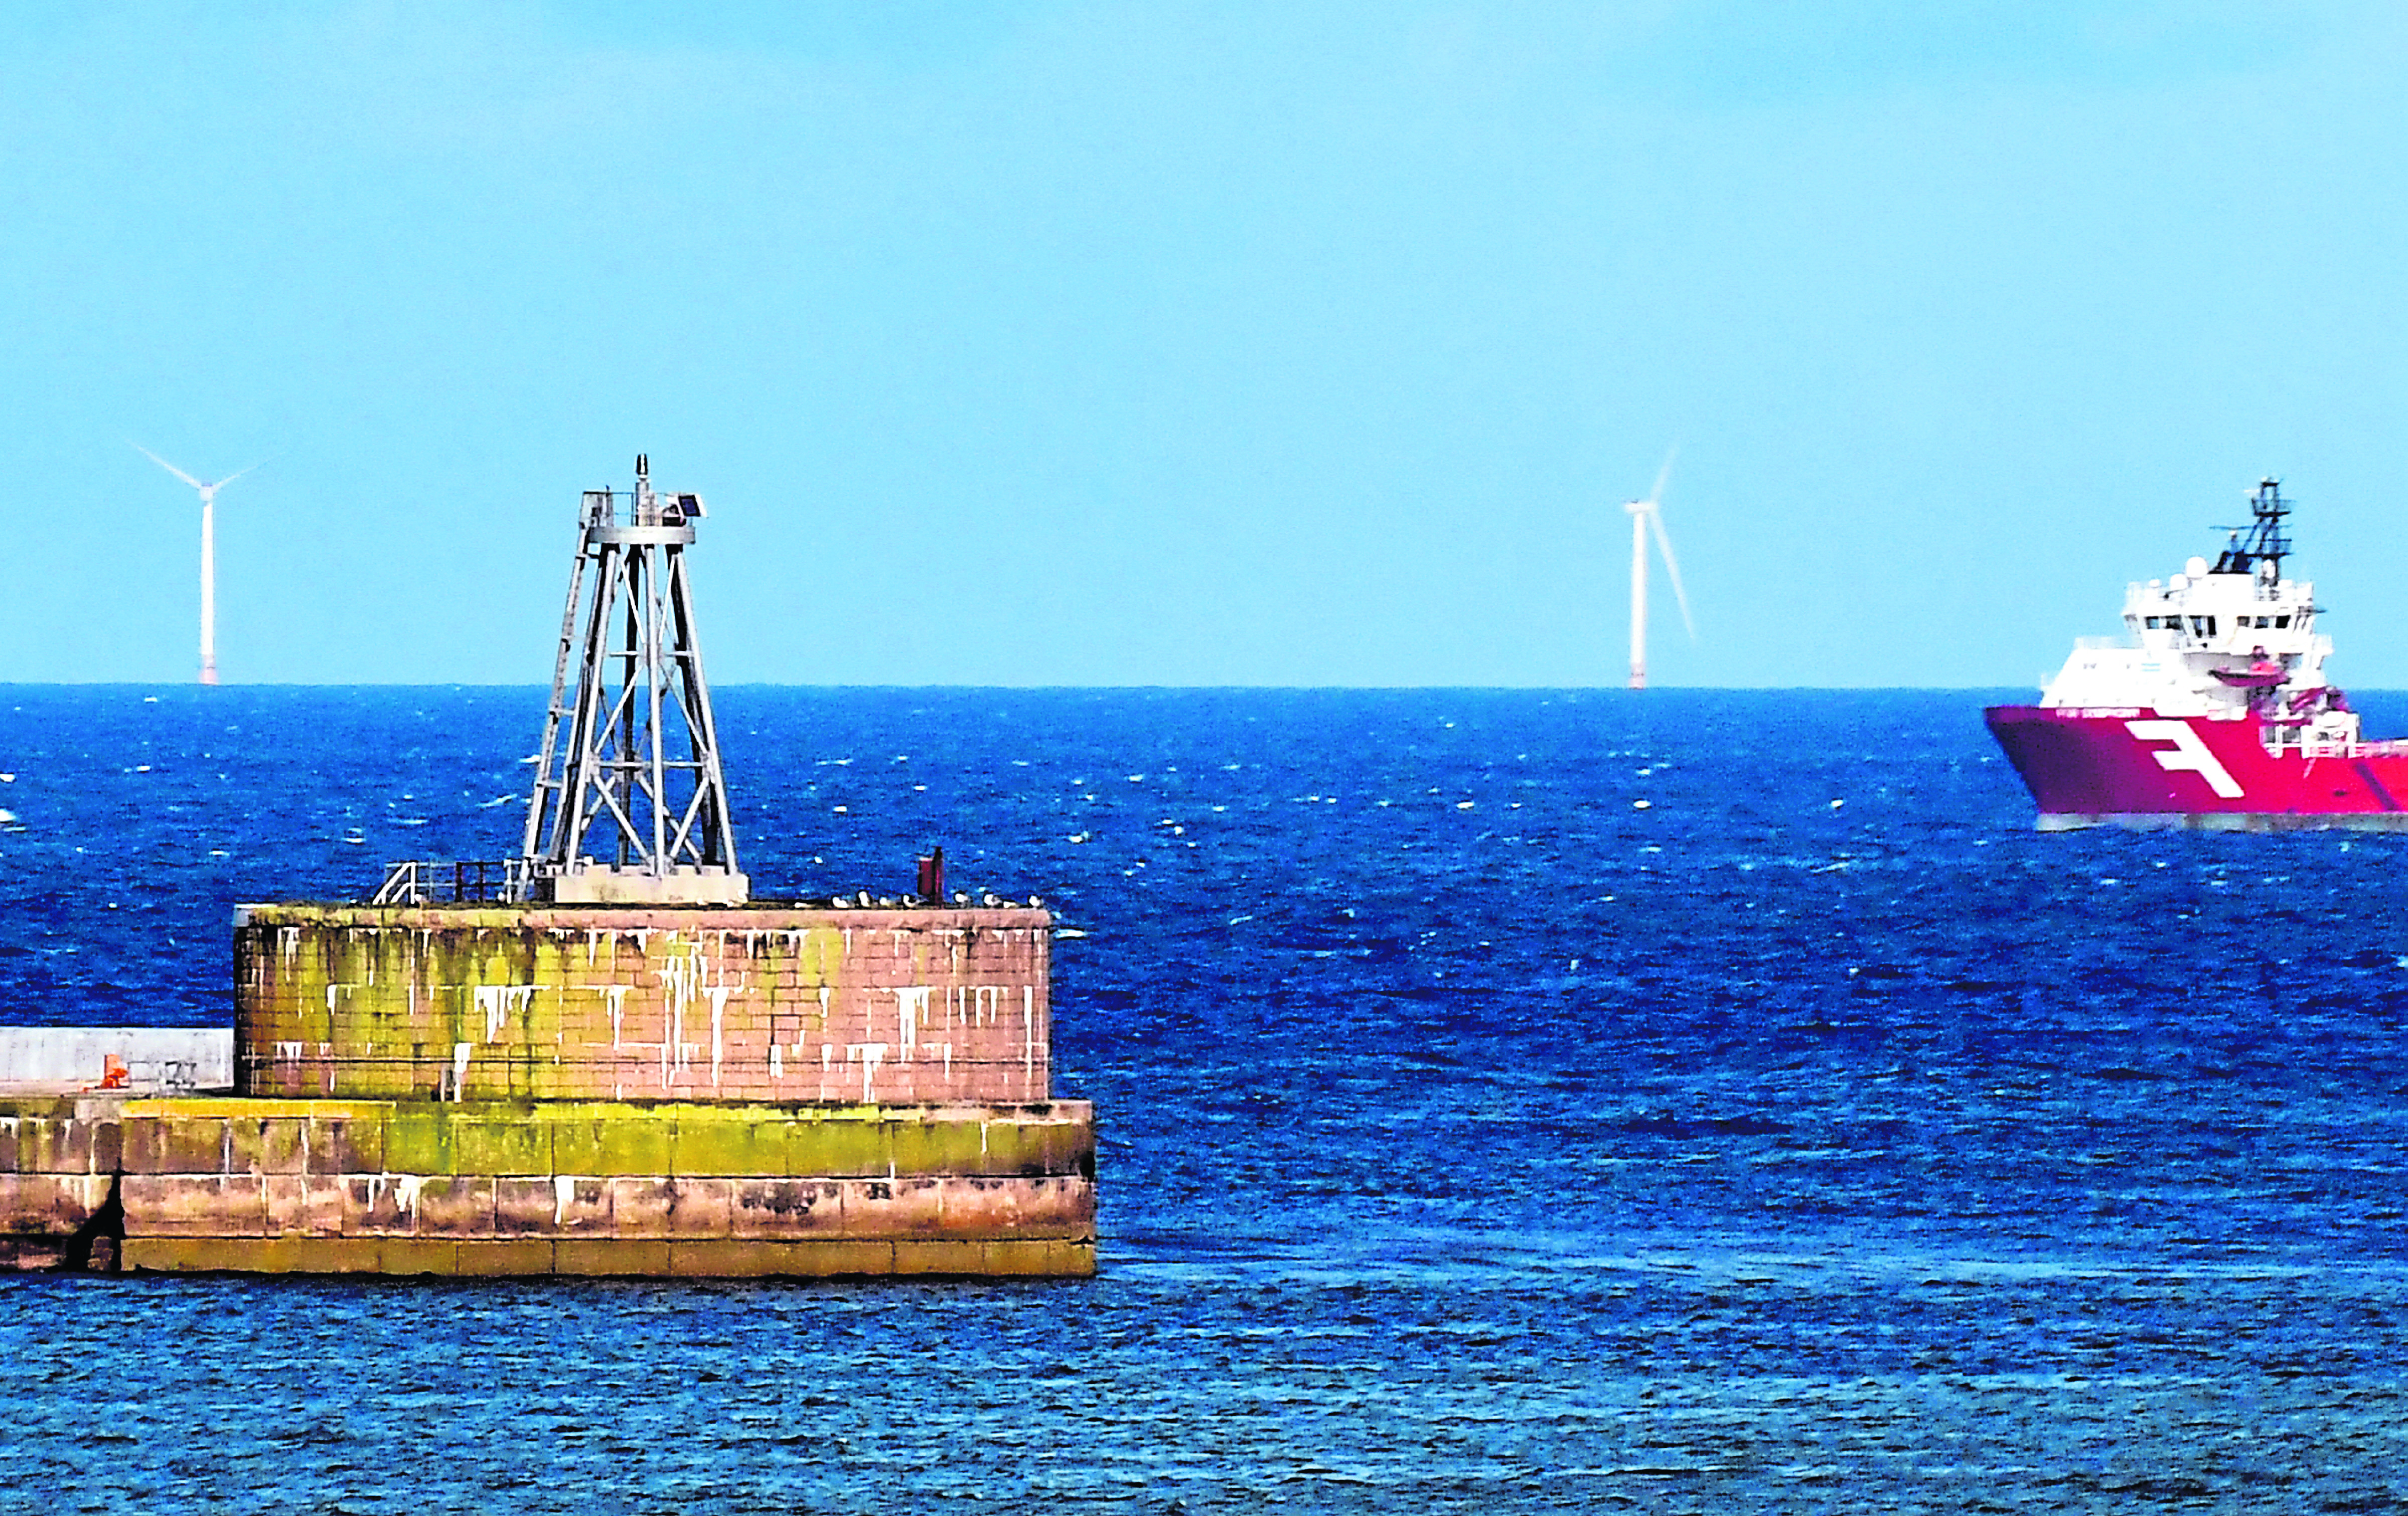 Equinor's Hywind offshore wind farm near Peterhead.